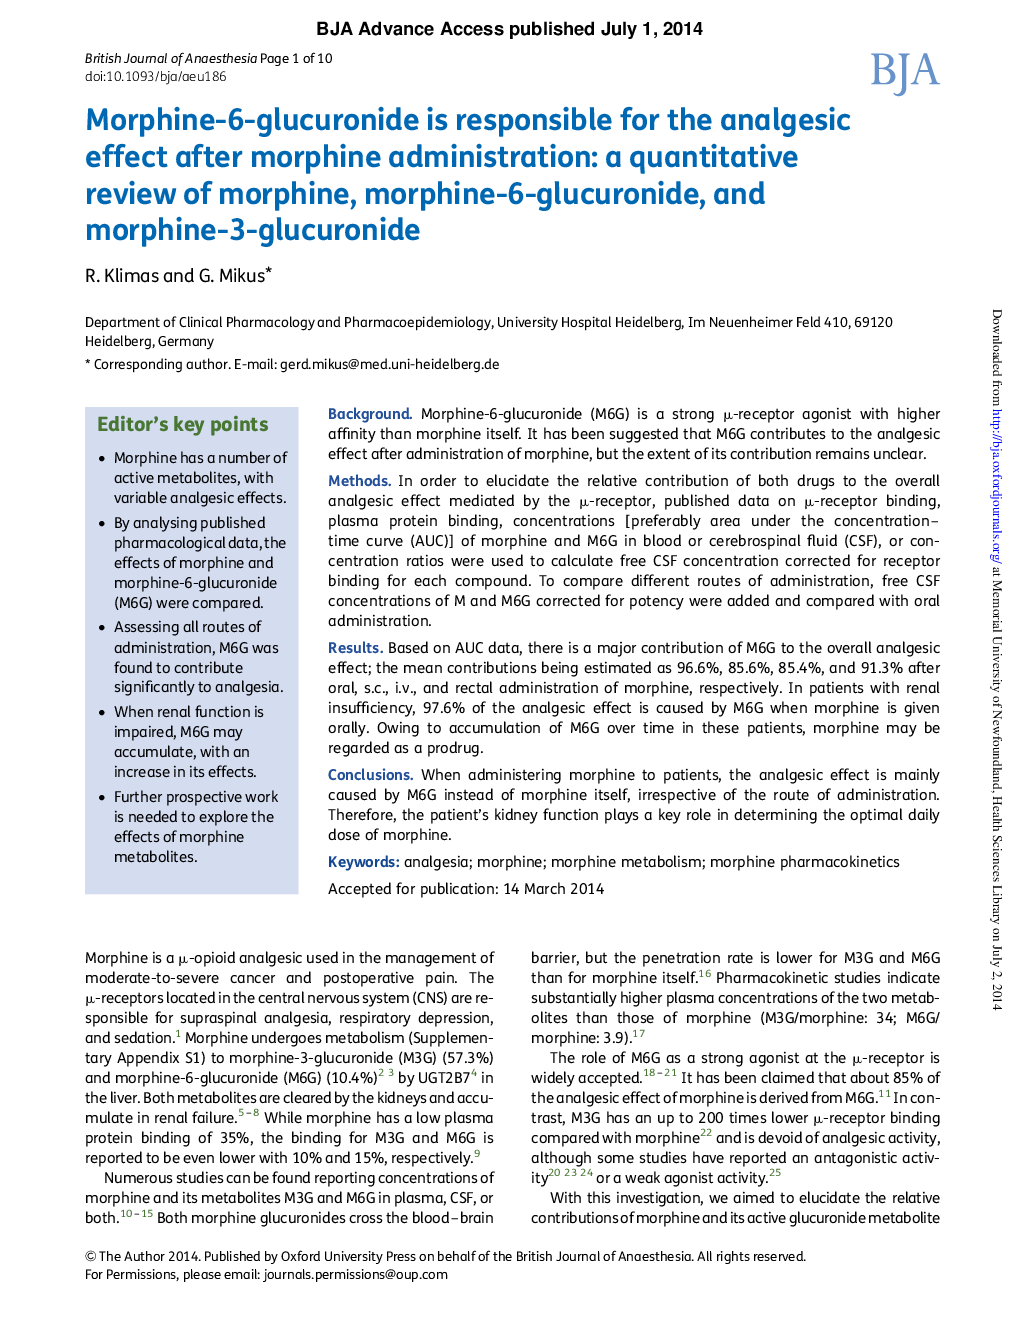 مورفین 6-گلوکوروناید مسئول اثرات ضد درد پس از مصرف مورفین است: بررسی کمی از مورفین، مورفین 6-گلوکورونید و مورفین -3 گلوکورونید 